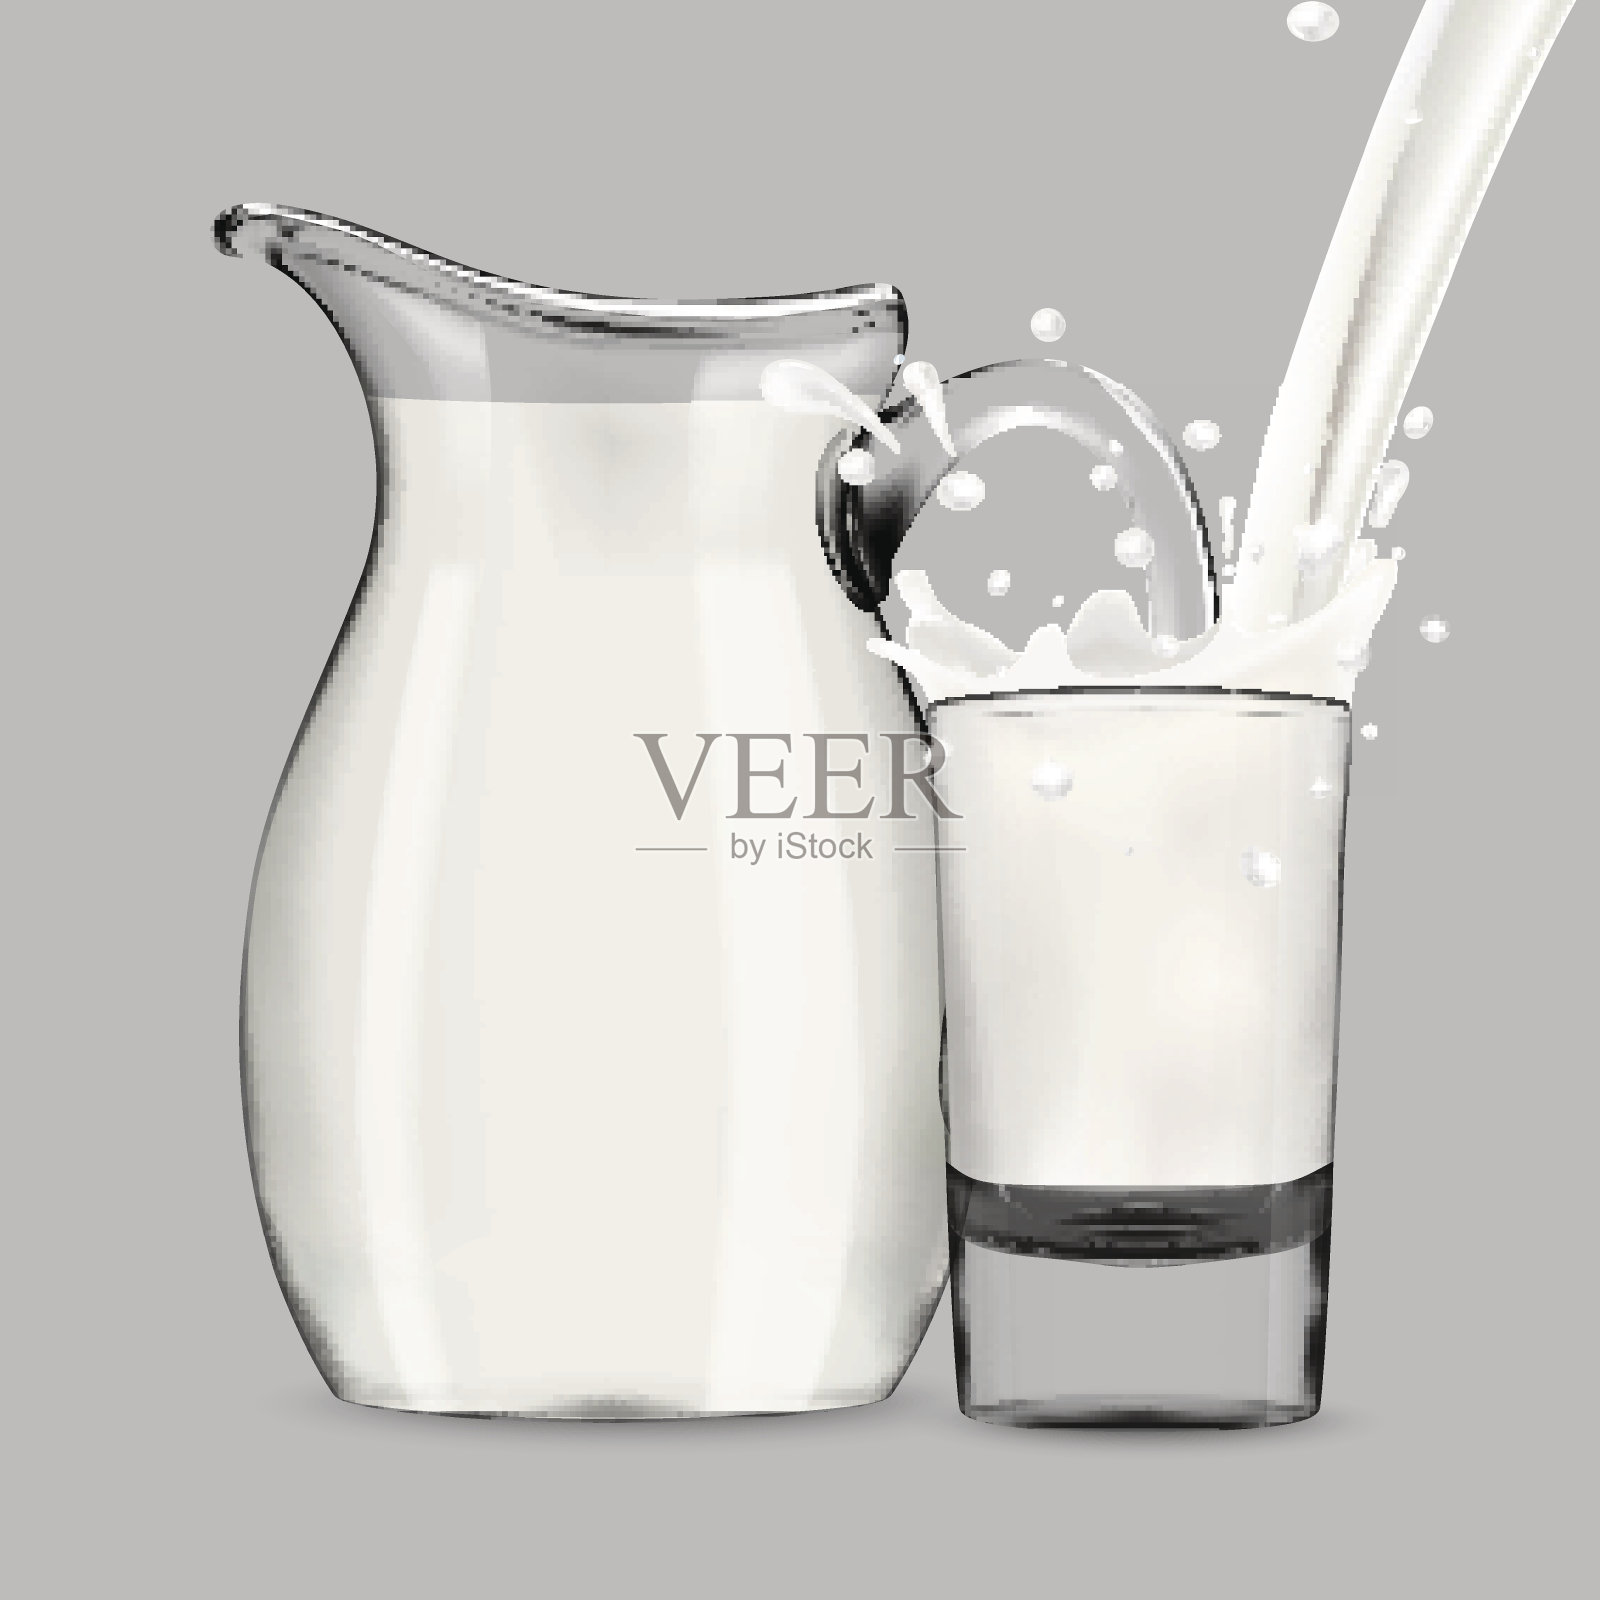 将牛奶倒入透明的玻璃中，溅起大量的水滴，后面是满满一壶牛奶插画图片素材